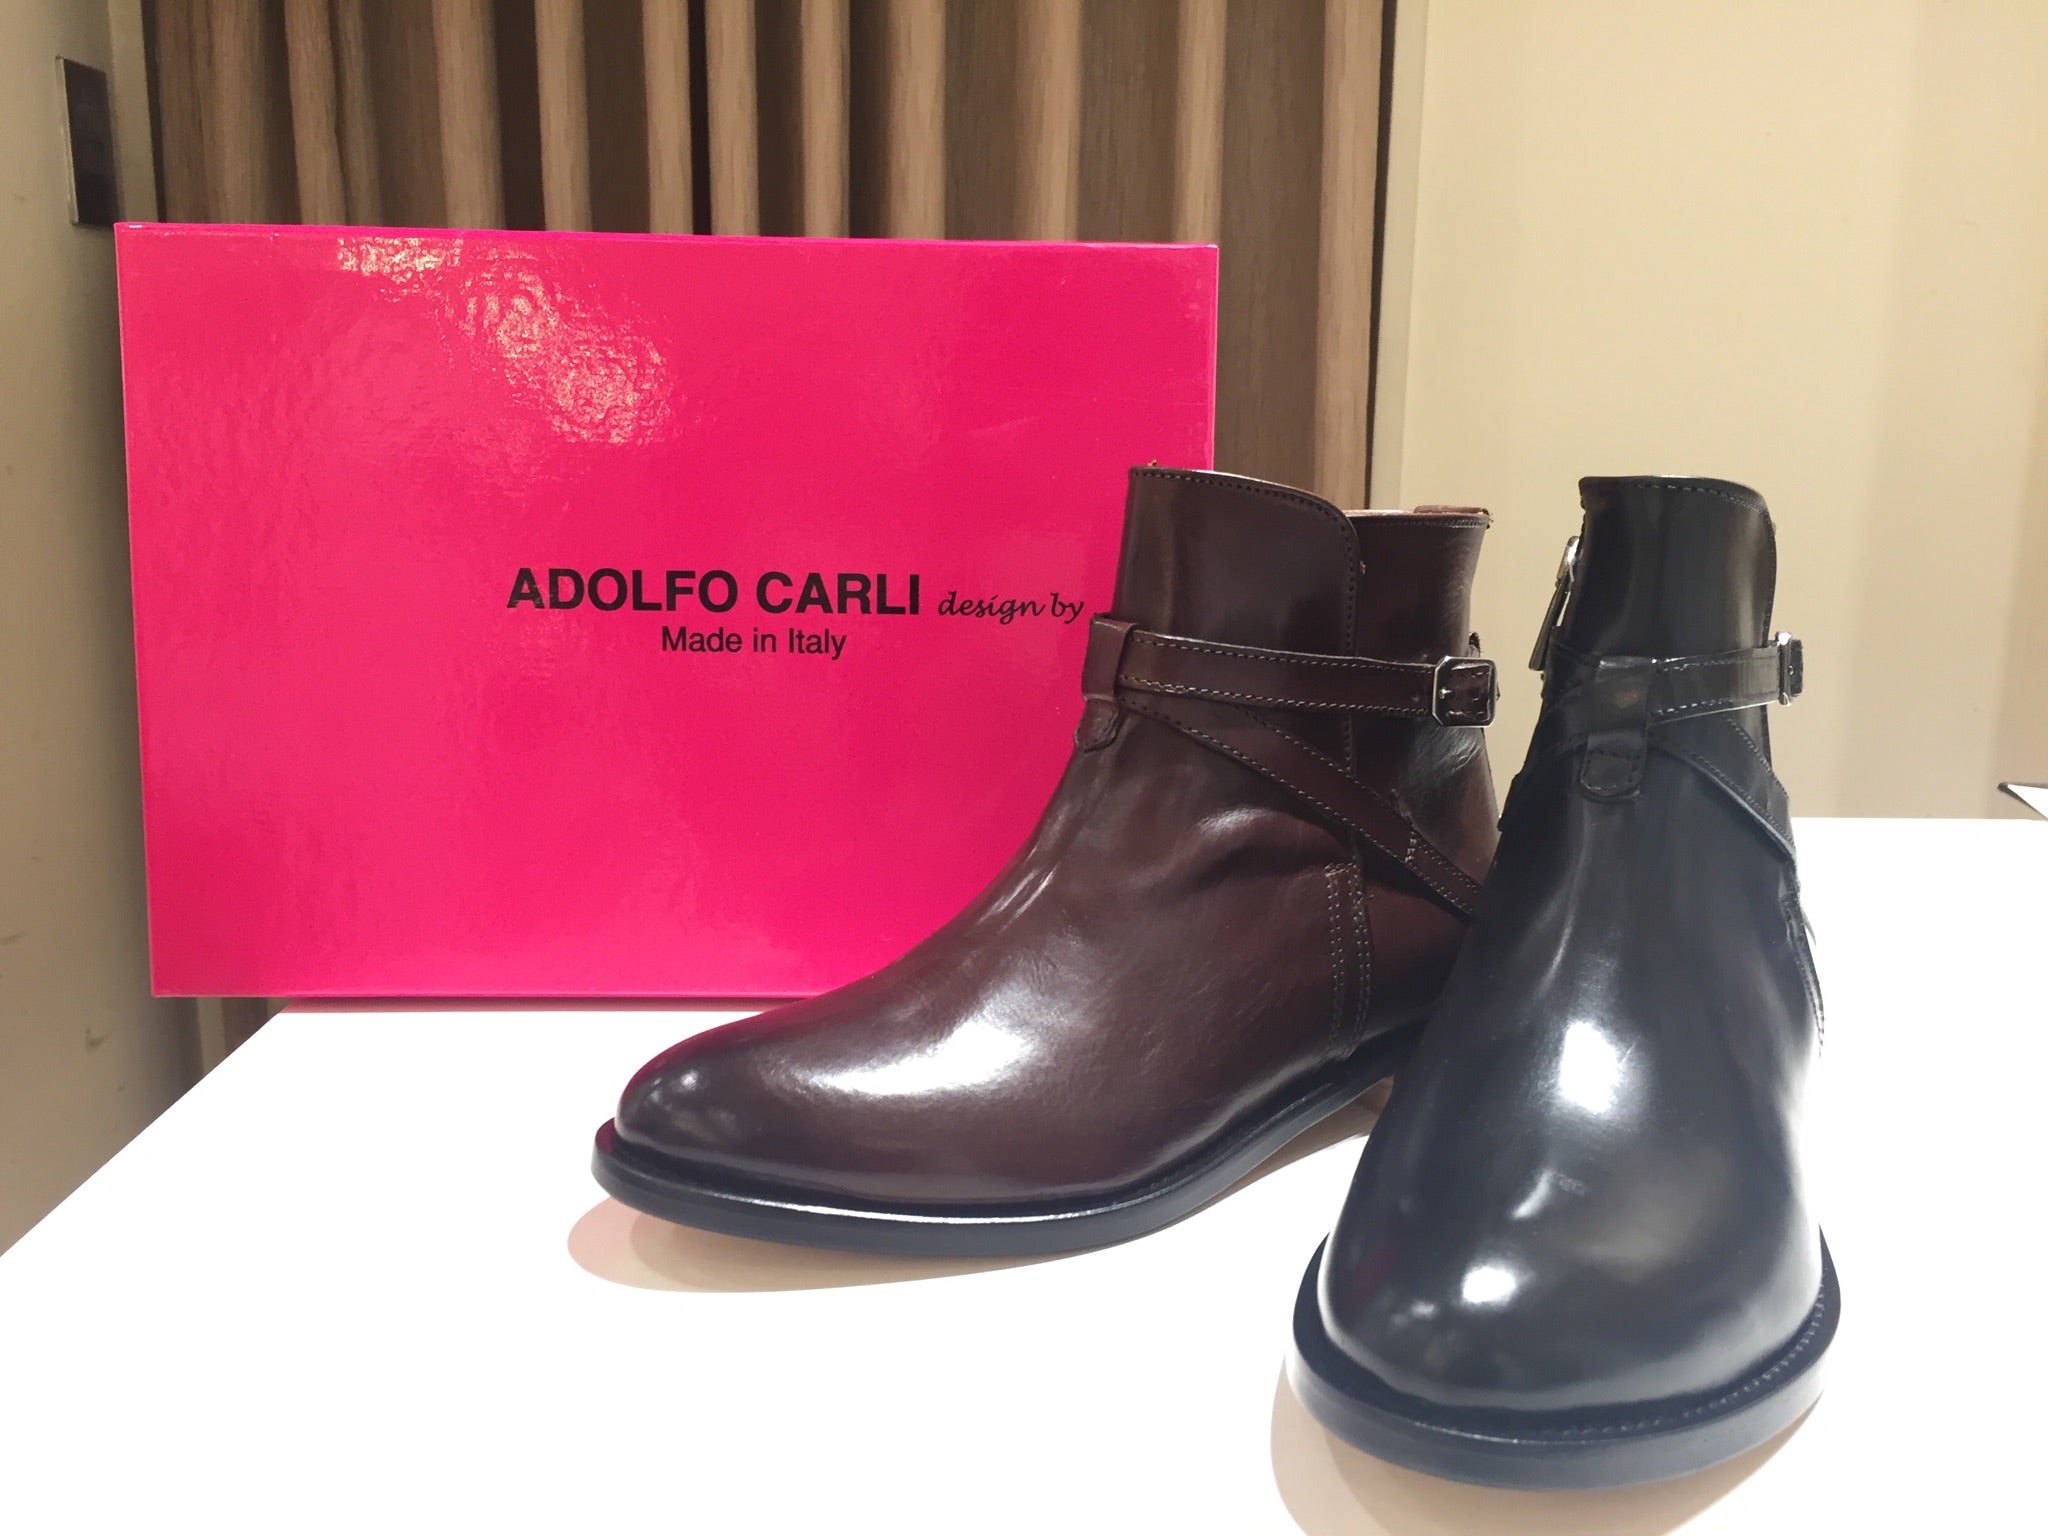 Adolfo Carliメンズブラウンレザーブーツ イタリア製ブーツ - ブーツ